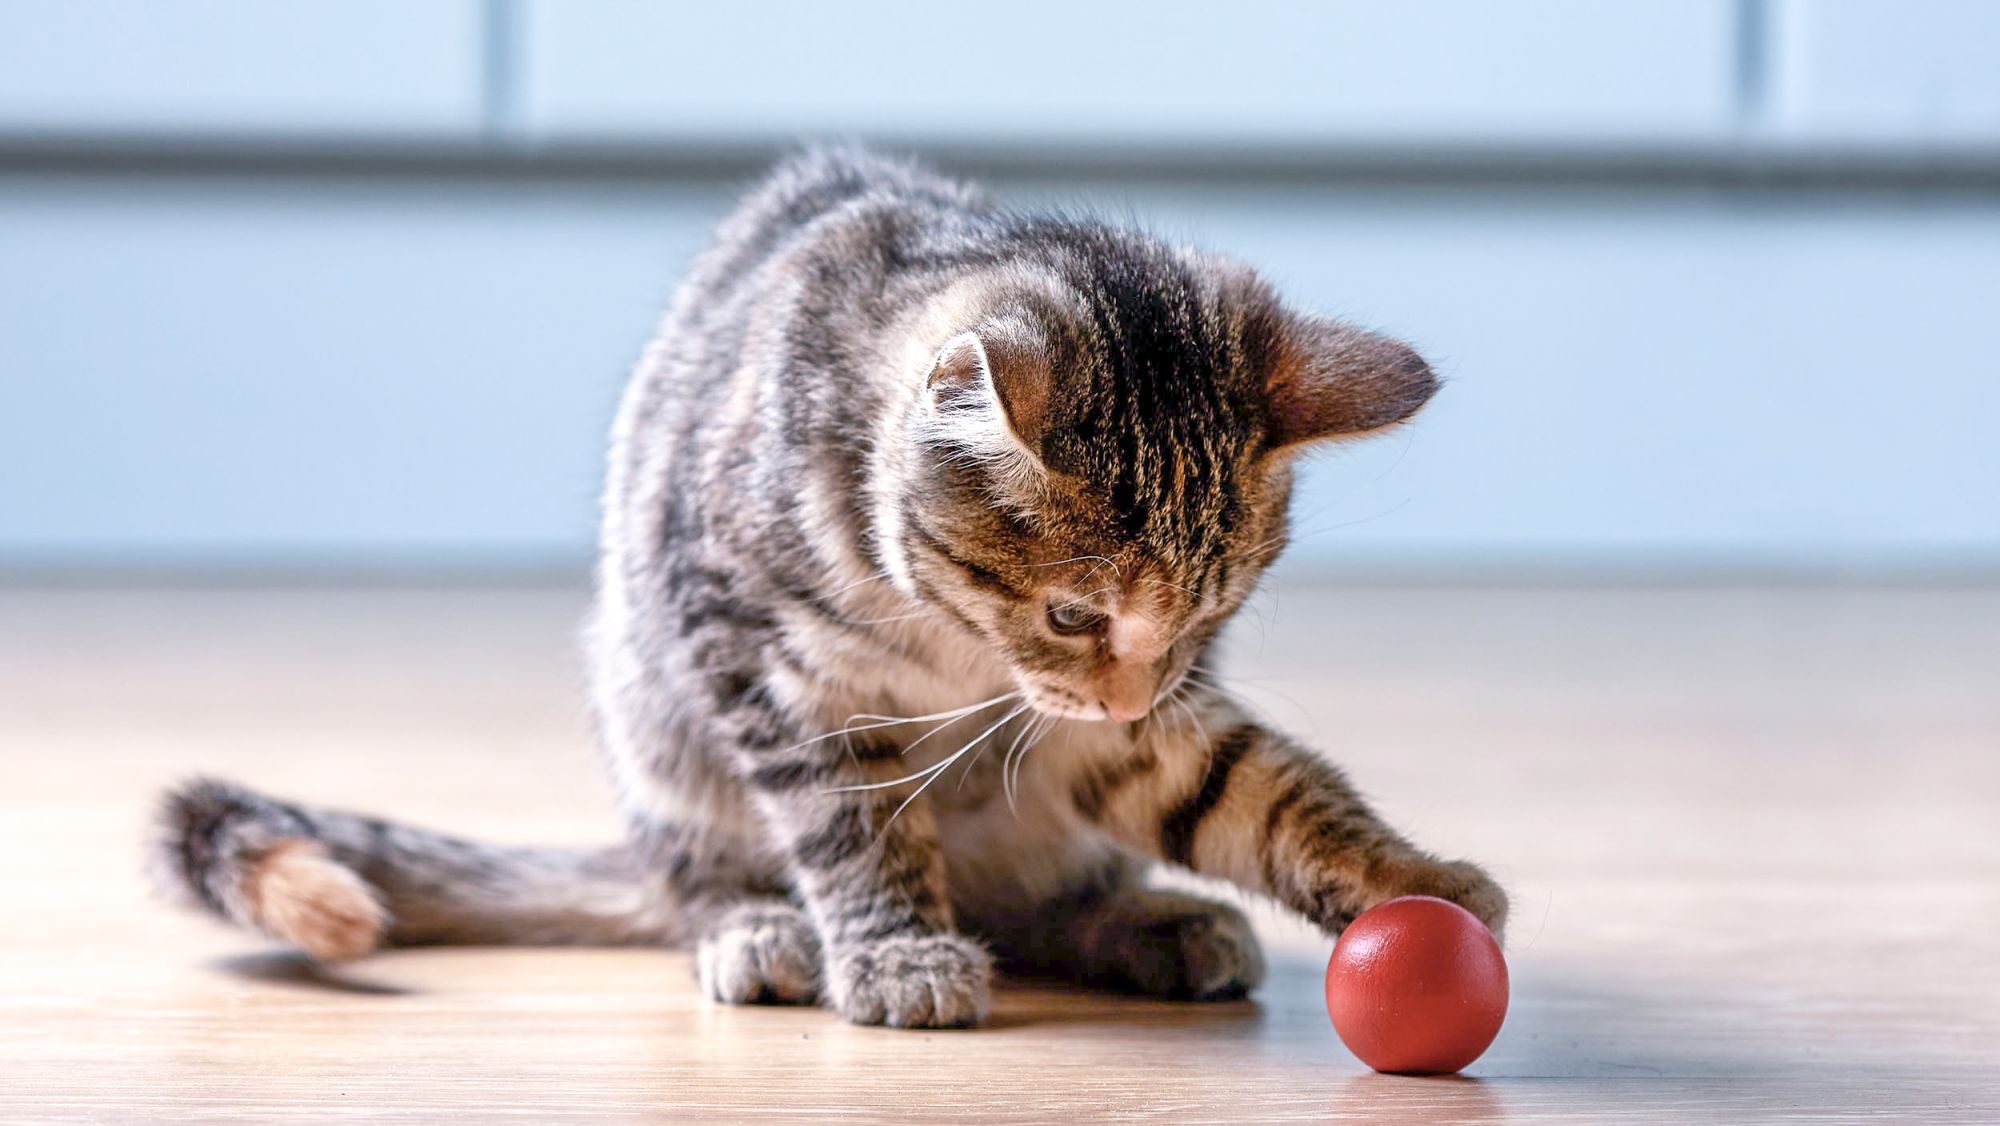 Ein Kätzchen sitzt in einem Innenraum auf einem Holzboden und spielt mit einem roten Ball